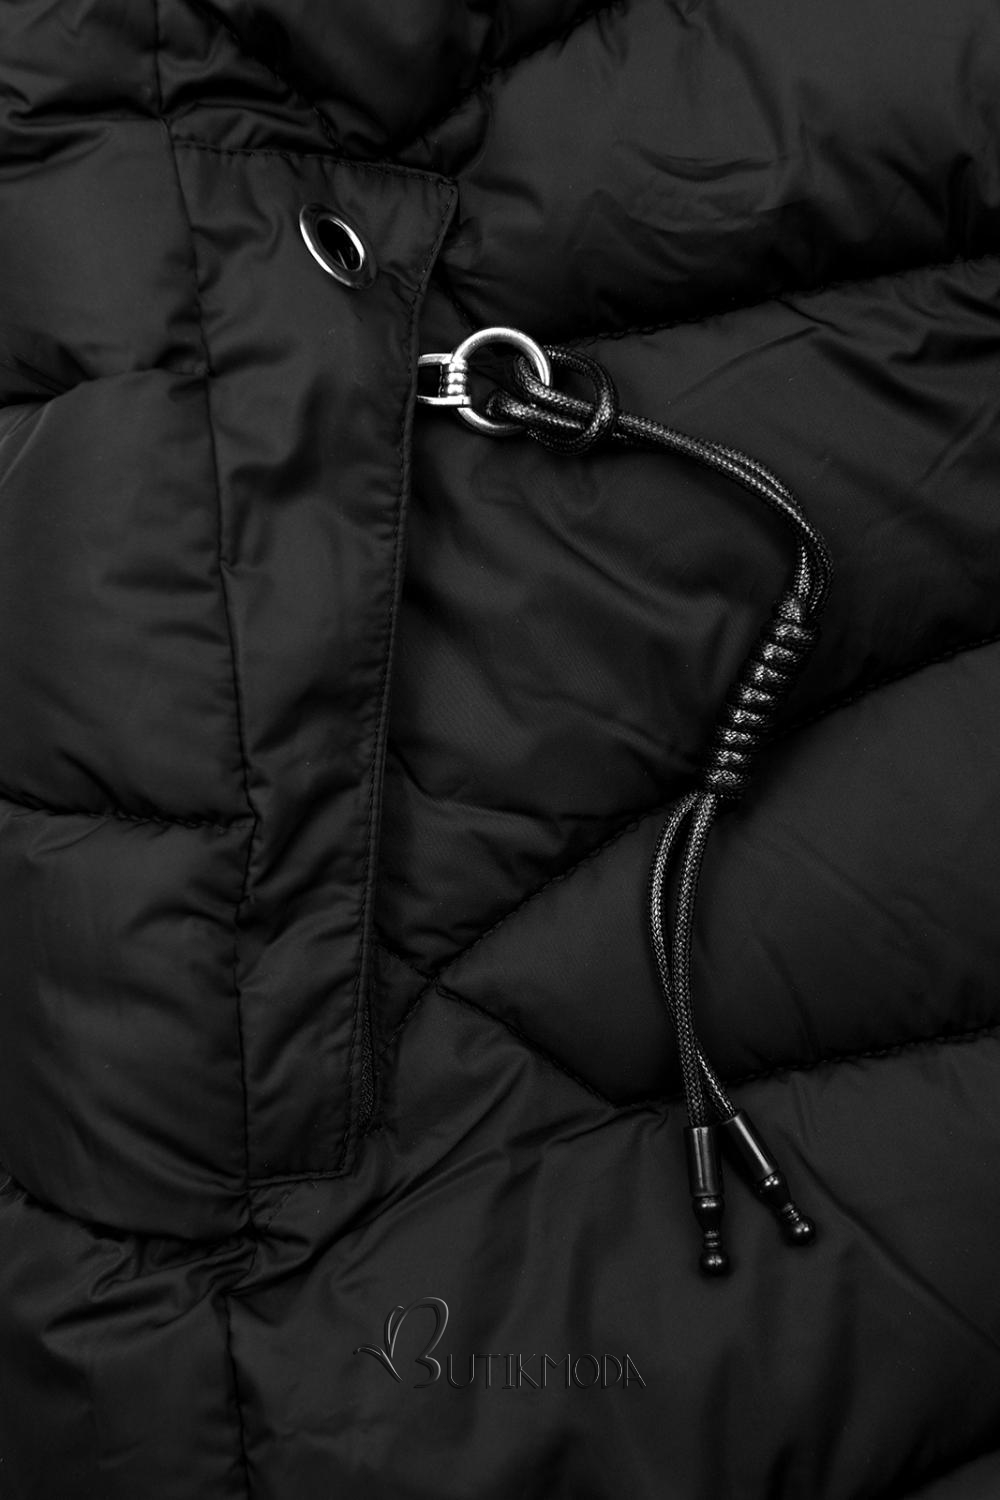 Fekete színű steppelt téli kabát